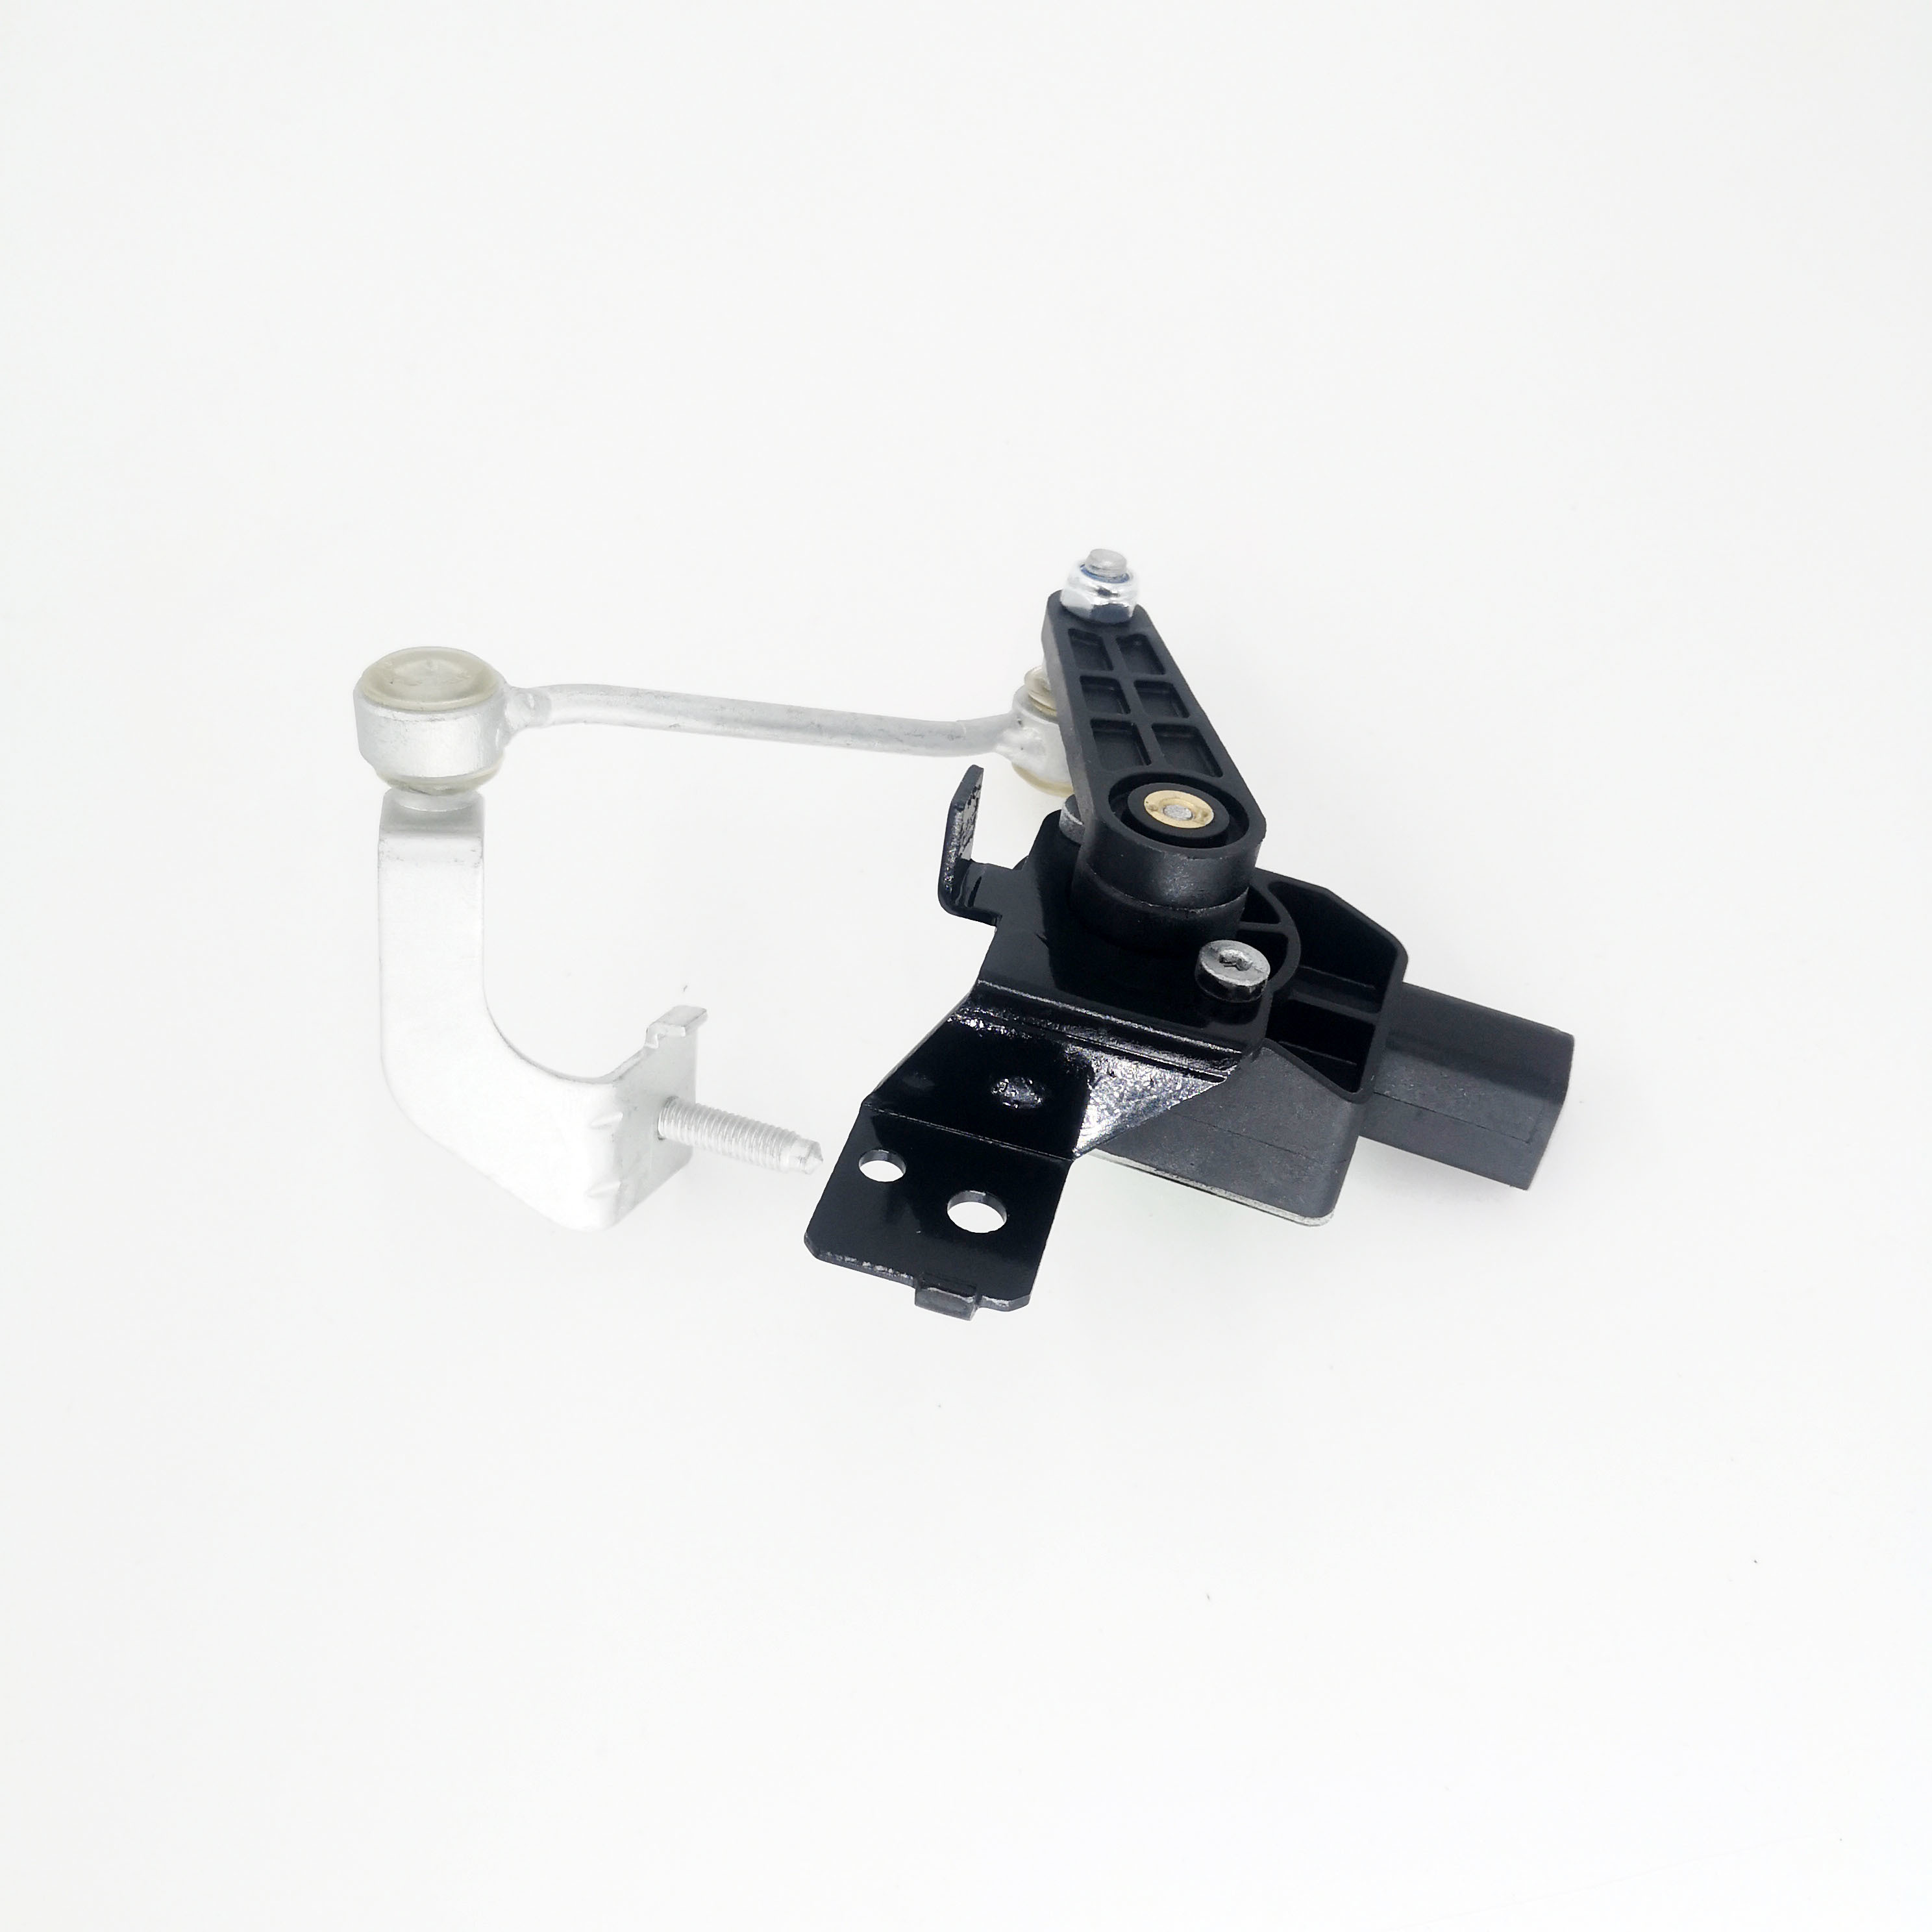 Headlight Level sensor Suspension height sensor for Audi 8J0941273F 8J0941273G